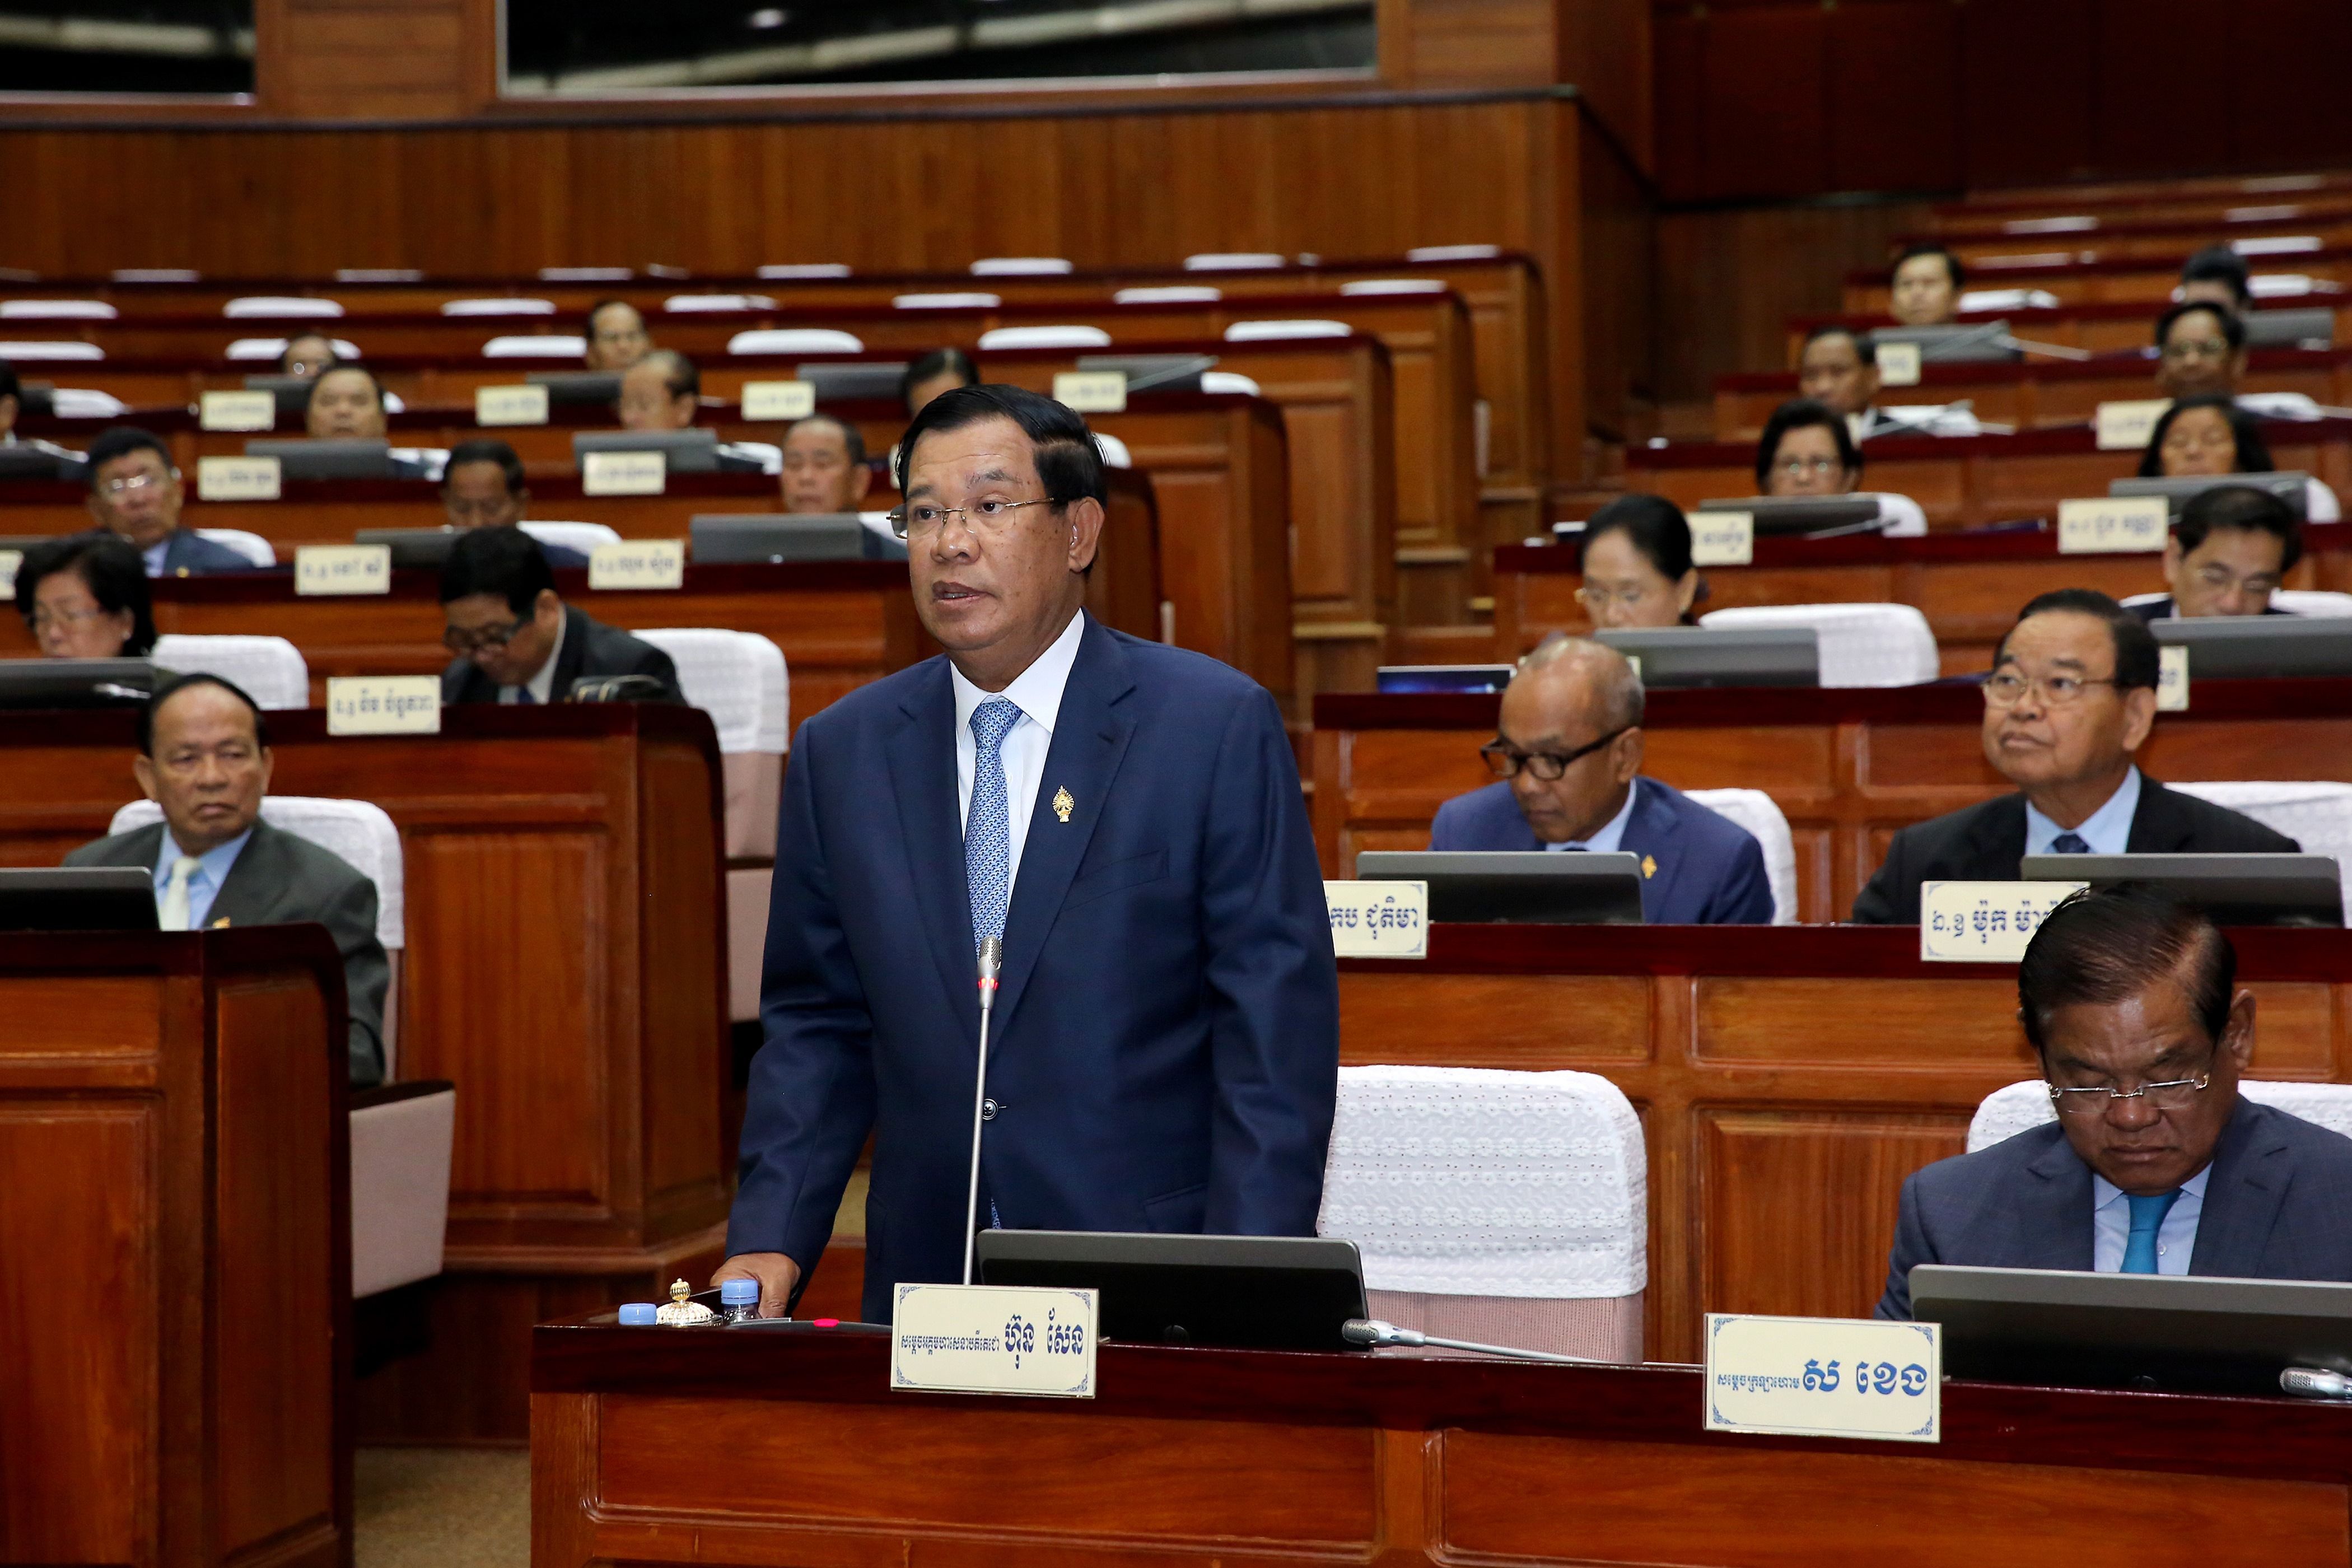 สมเด็จฯฮุน เซน นายกรัฐมนตรีกัมพูชา ขณะกล่าวในที่ประชุมรัฐสภา ที่กรุงพนมเปญ เมื่อวันที่ 31 มกราคม (เอเอฟพี)